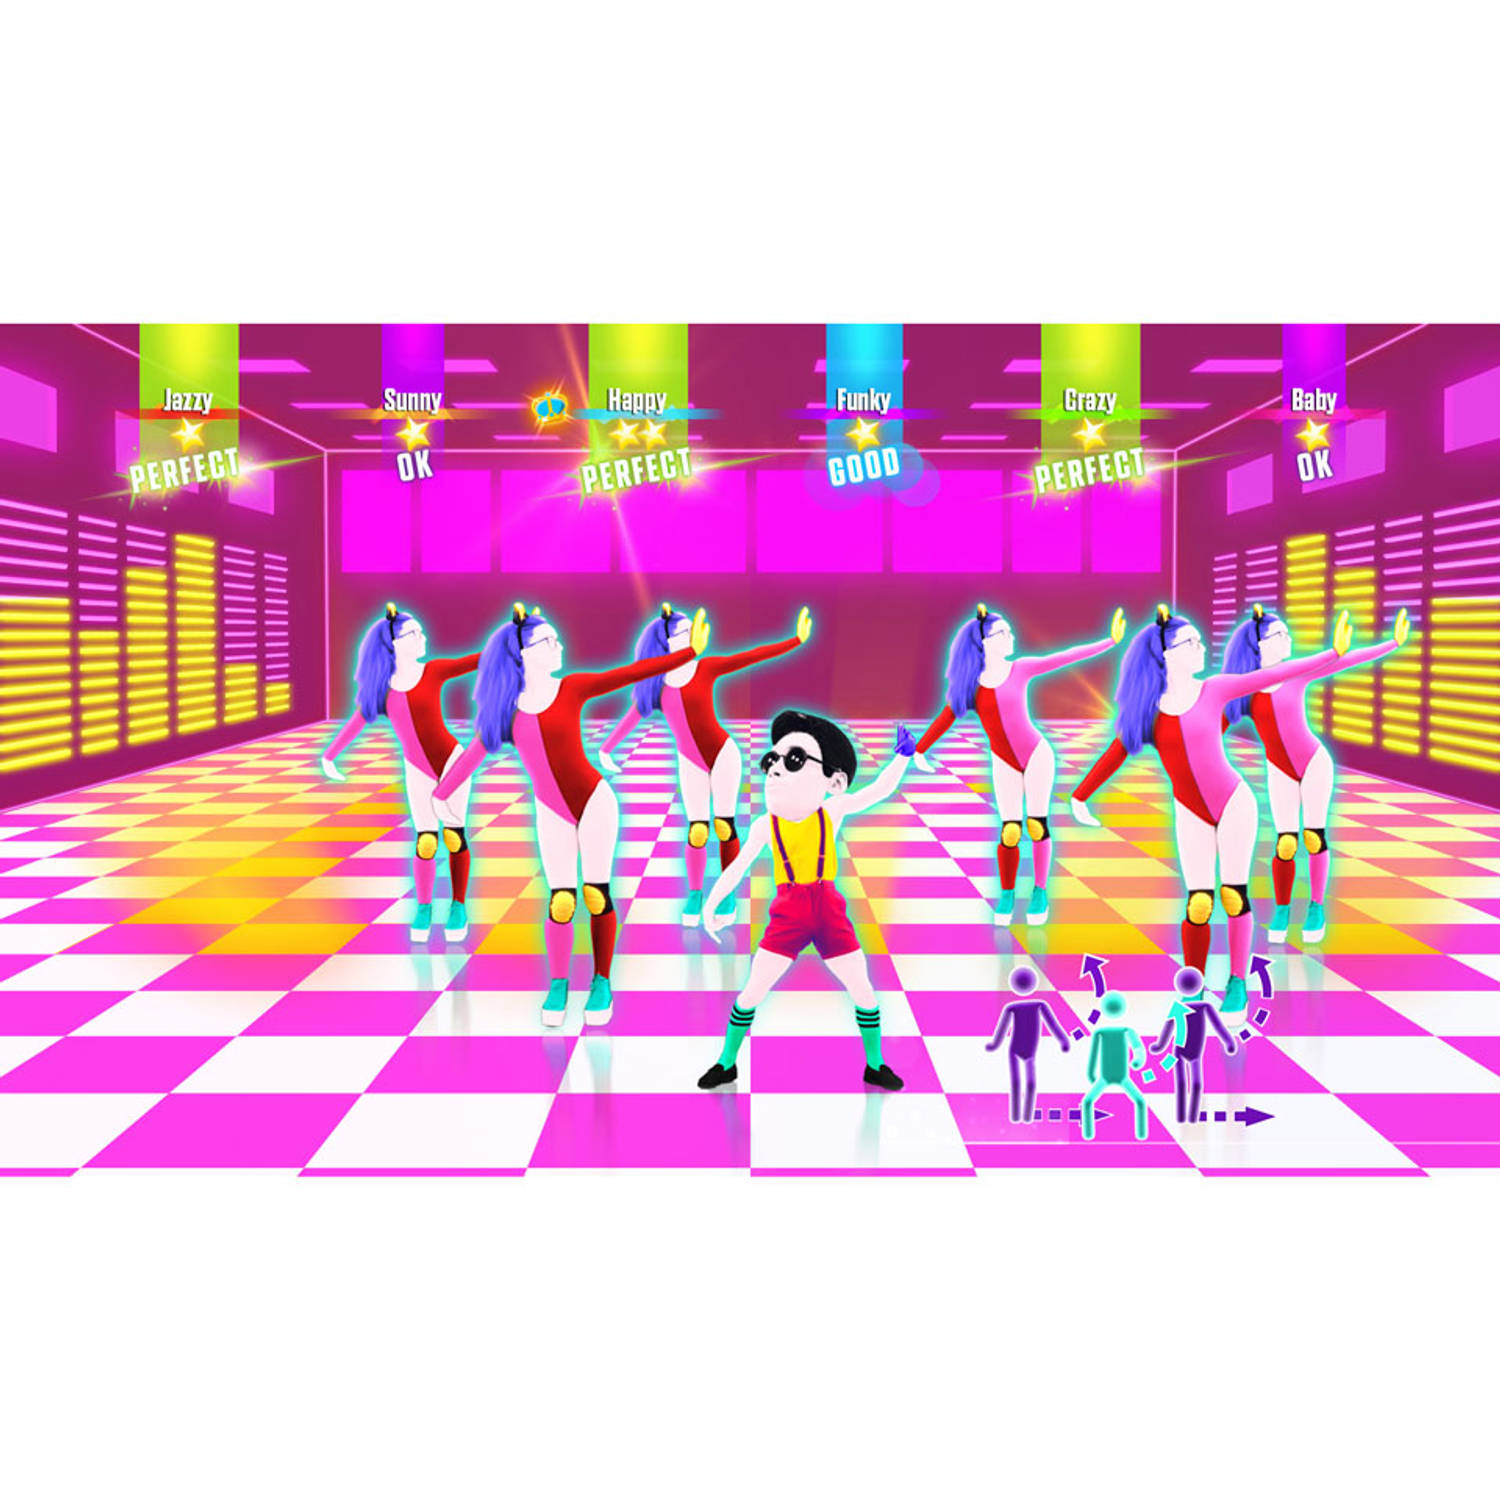 binnenvallen Anekdote sponsor Wii U Just Dance 2017 | Blokker